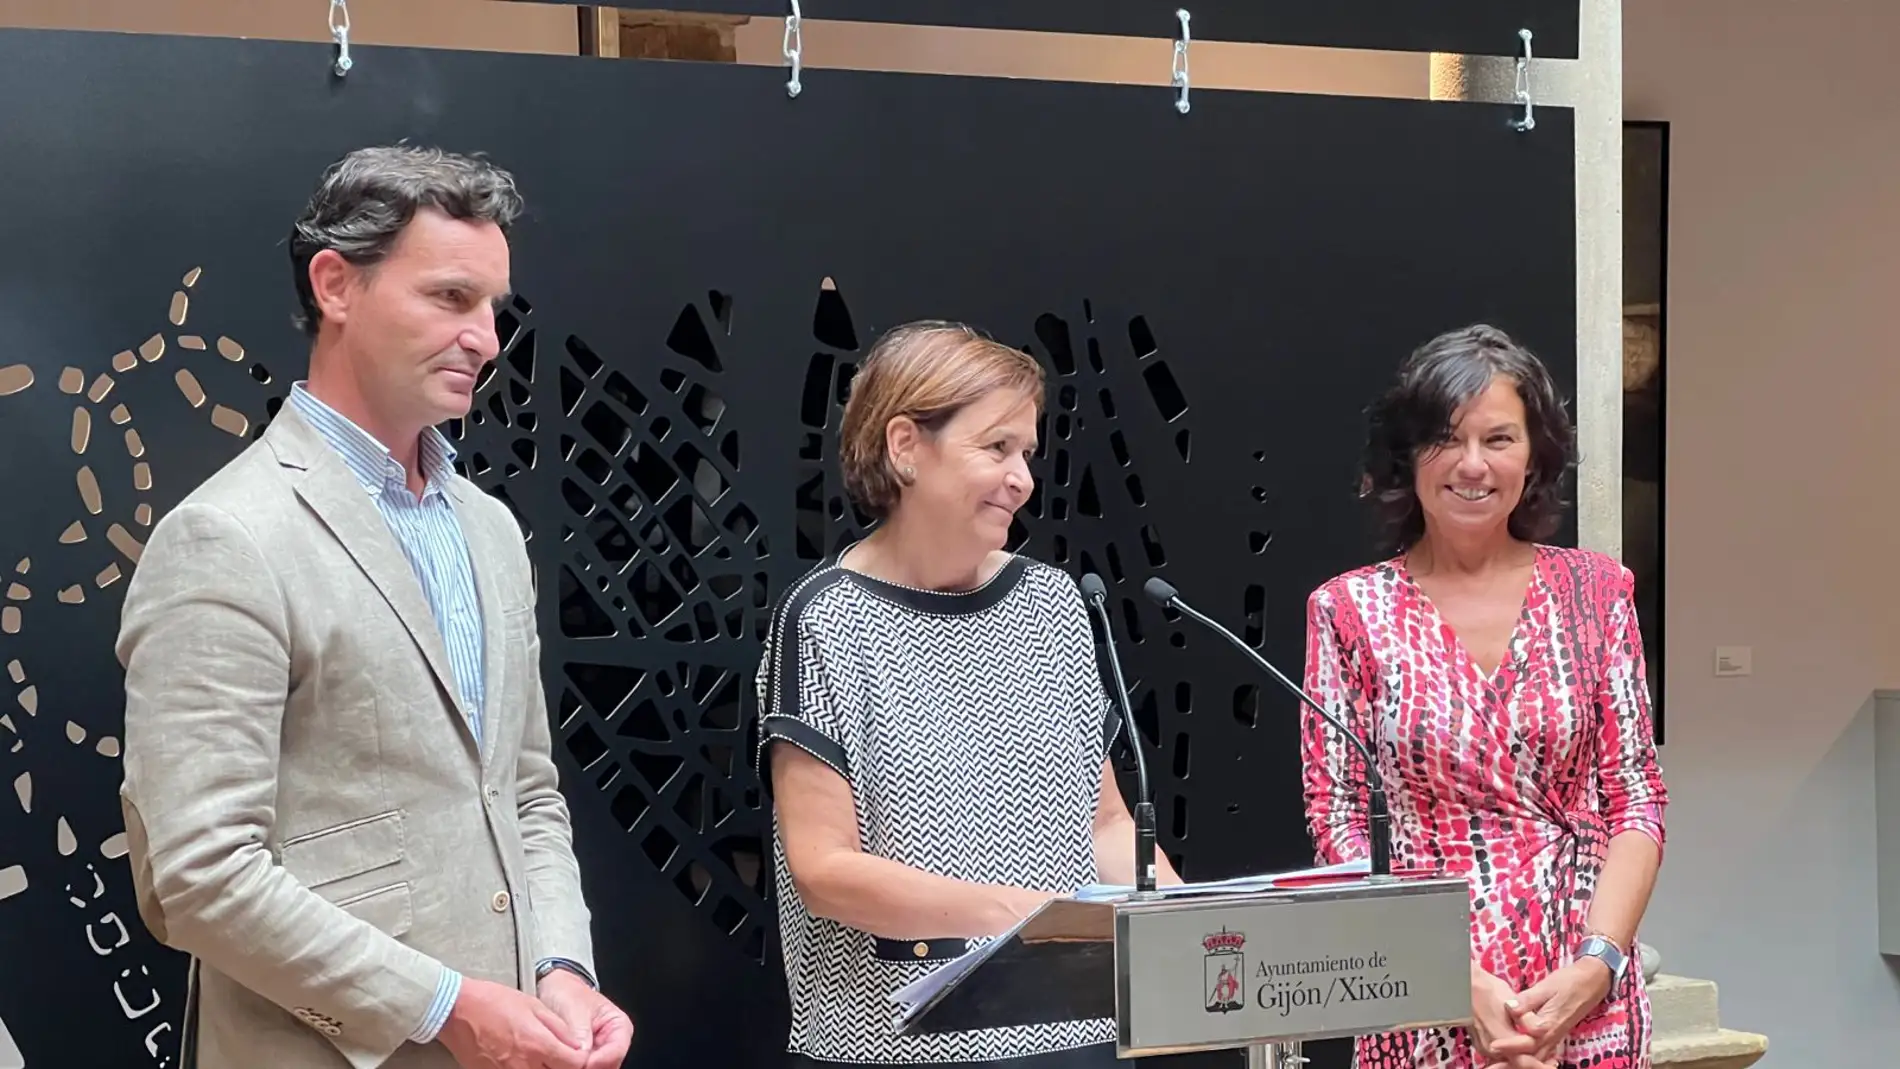 Gijón acuerda con Cajastur la cesión del Palacio de Revillagigedo en 2024 